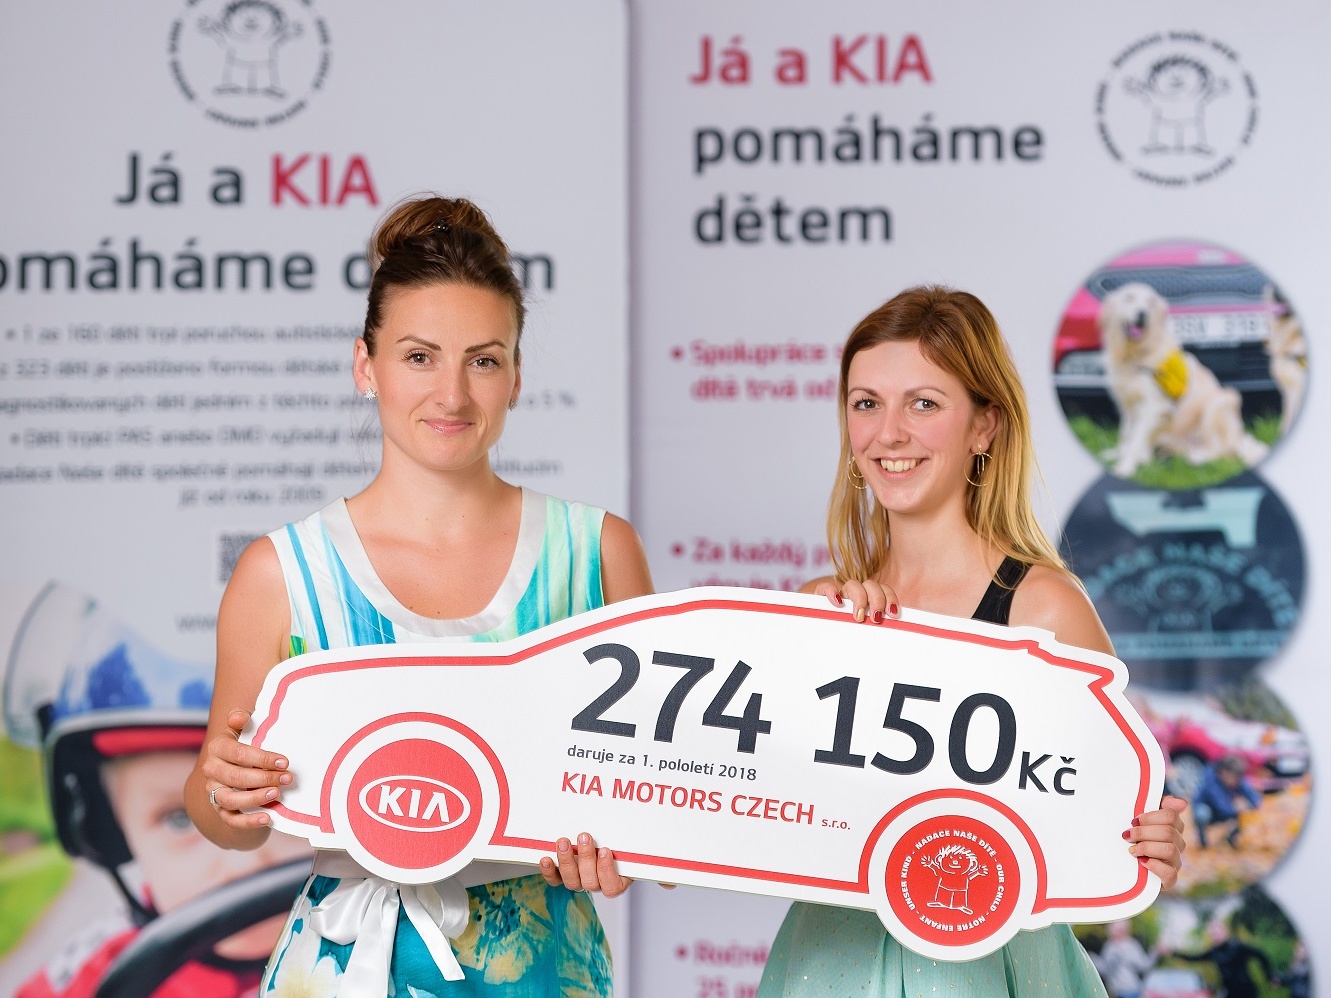 Já a Kia pomáháme dětem: projekt získal 274 150 korun 